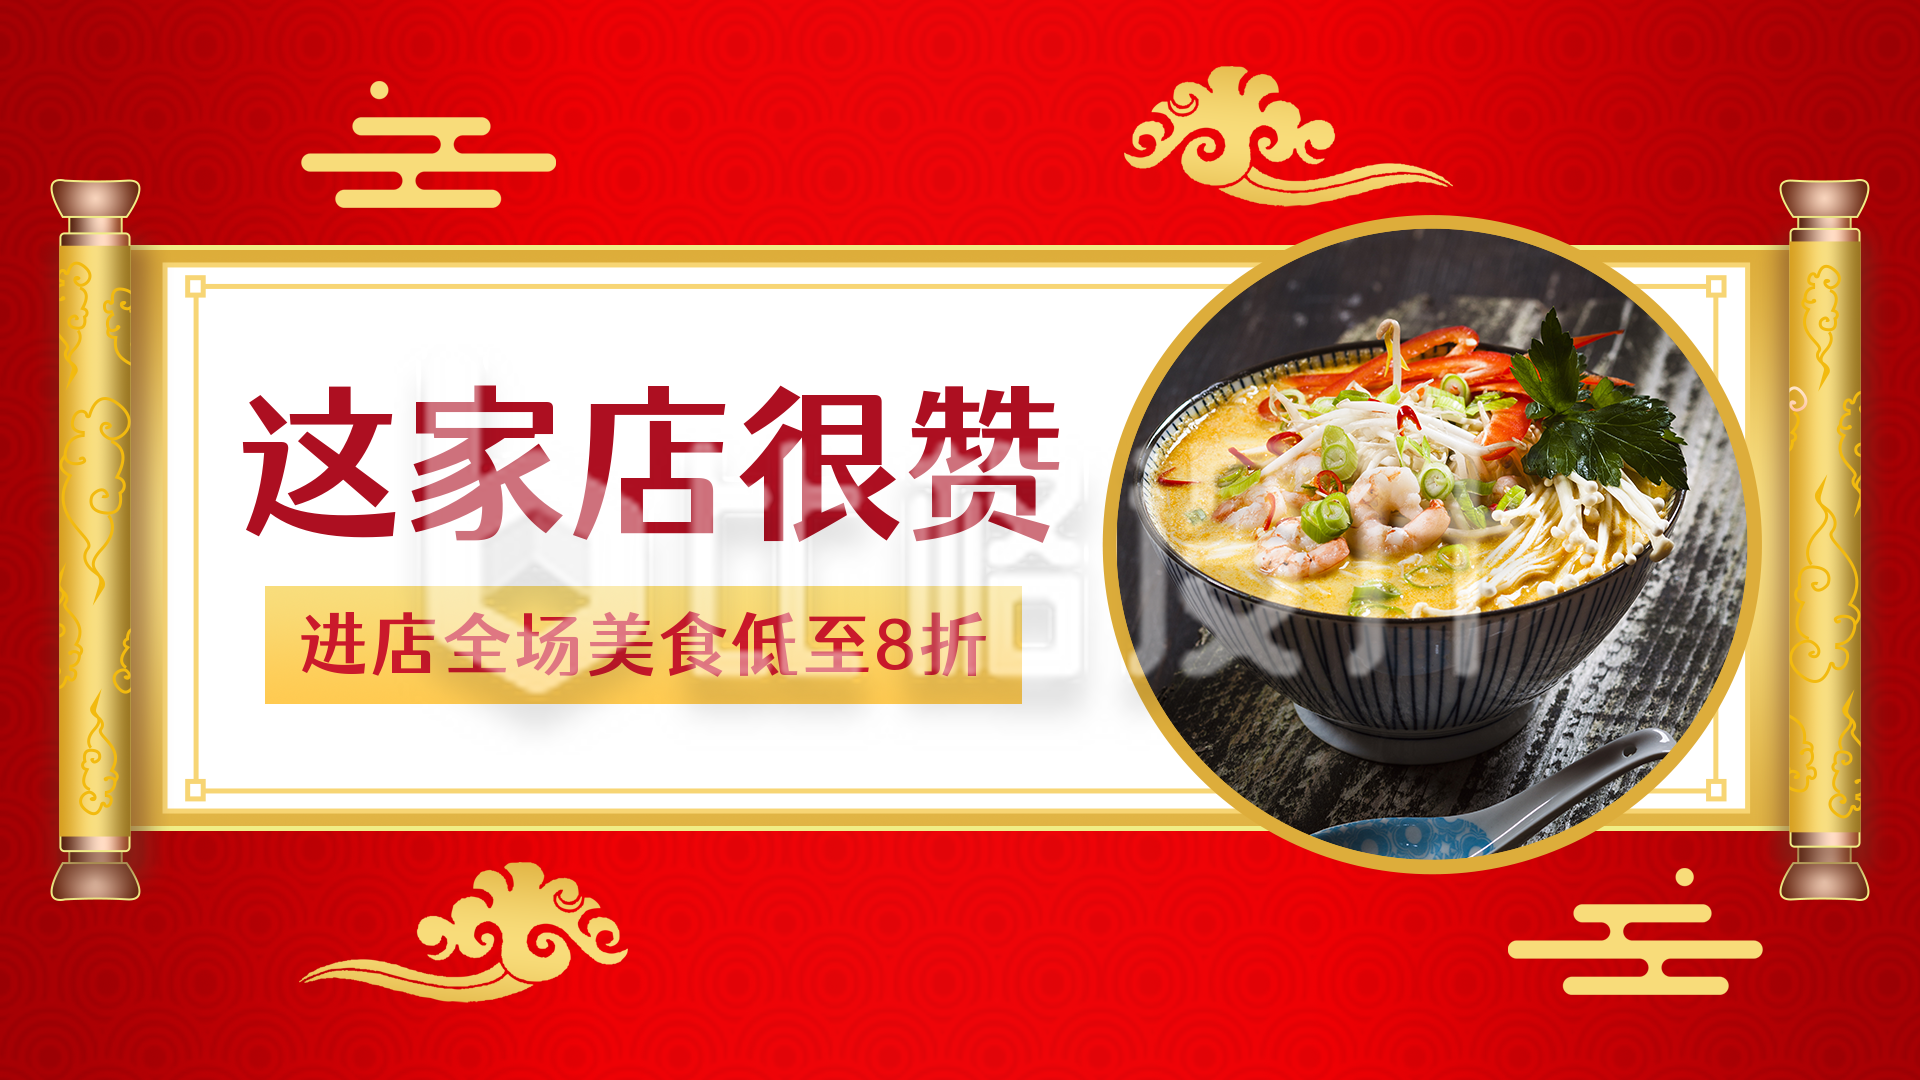 美食餐厅优惠活动视频打卡中国风红色视频封面